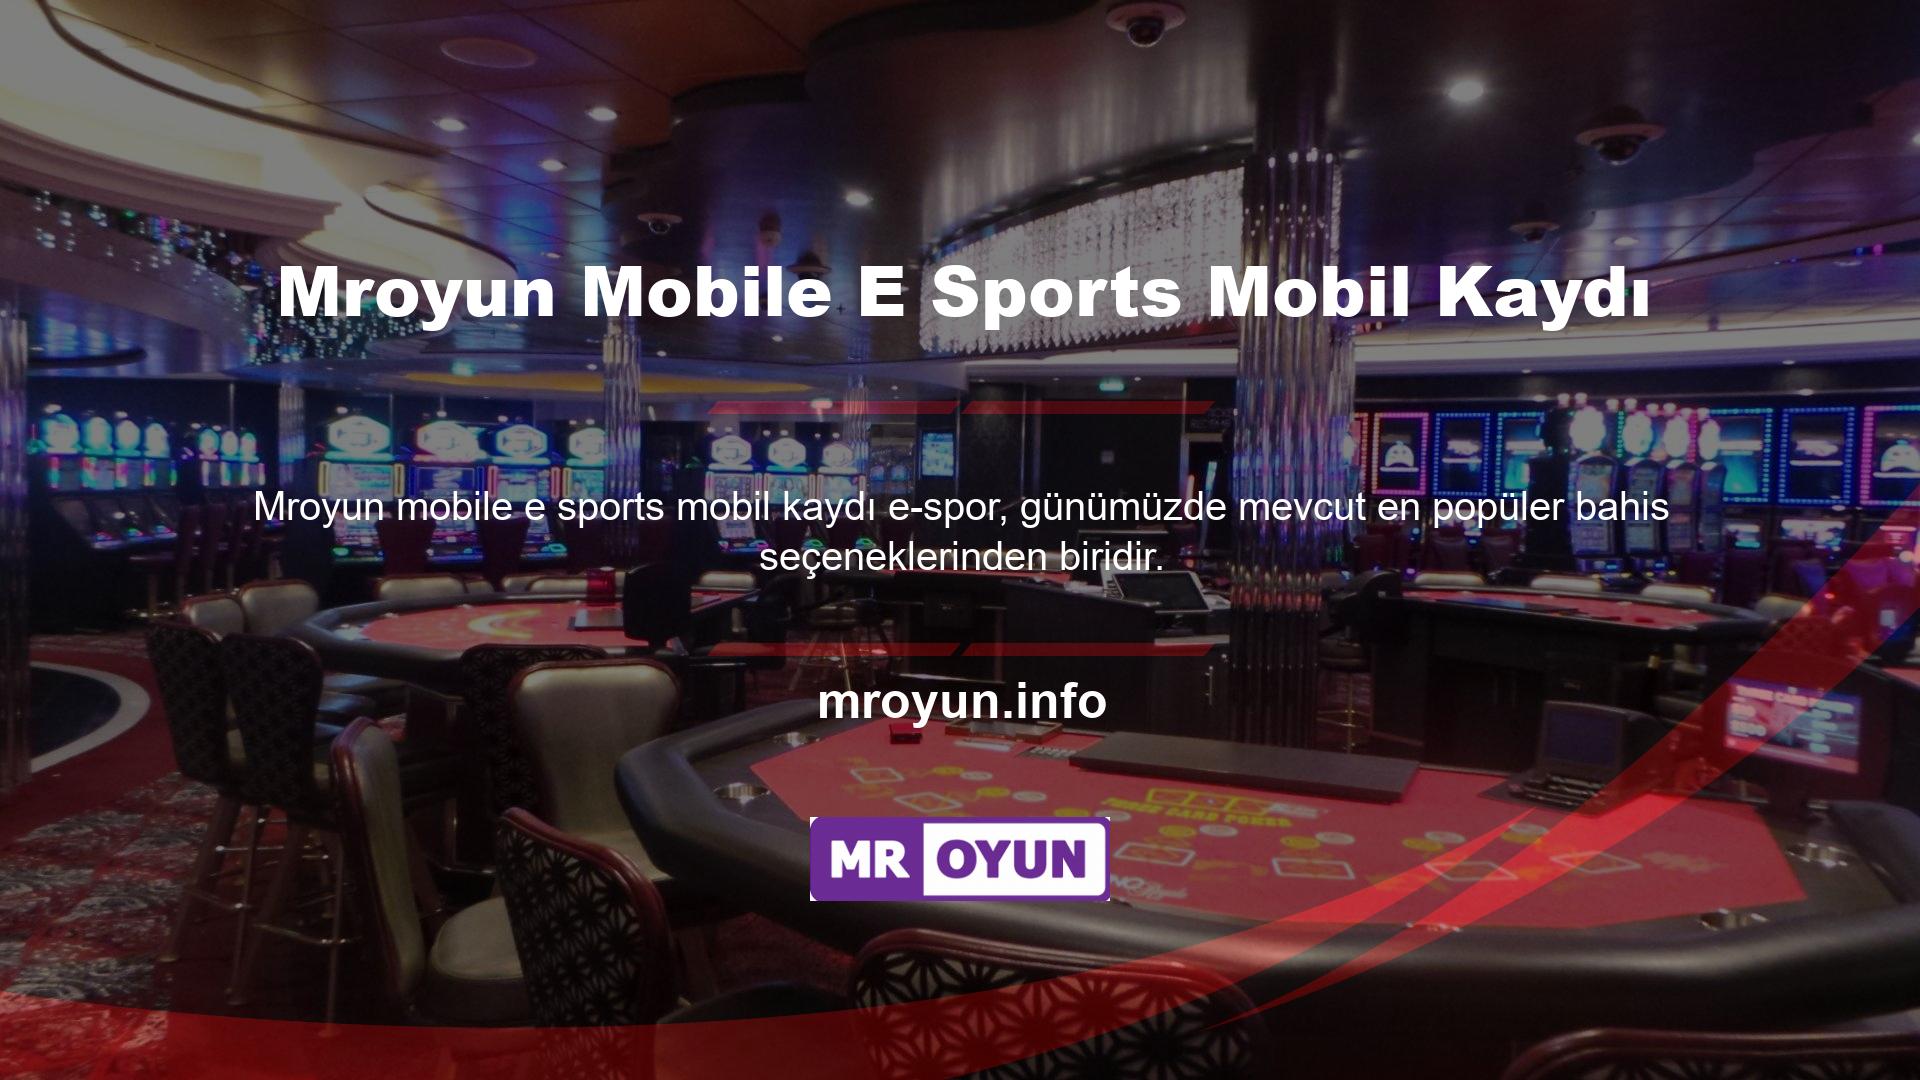 Bahis oyununu açmak için sitedeki mobil menüden e spor başlığı seçilebilir